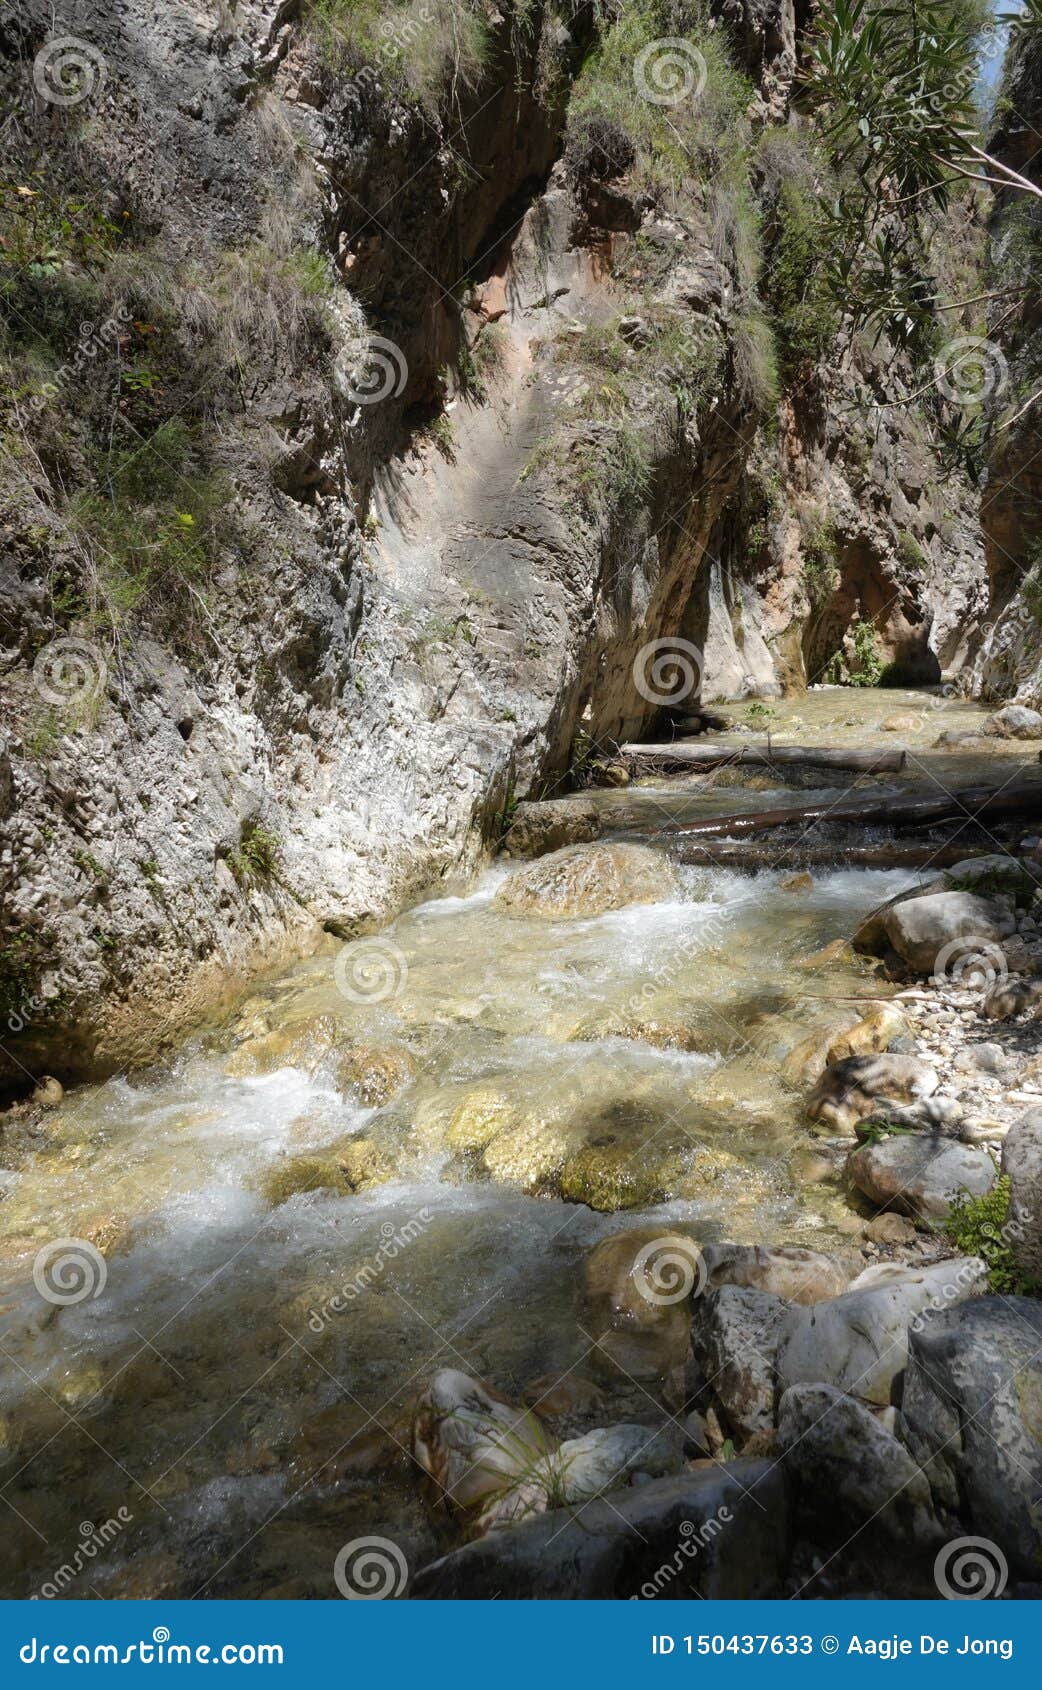 rio chillar in nerja in andalusia, spain